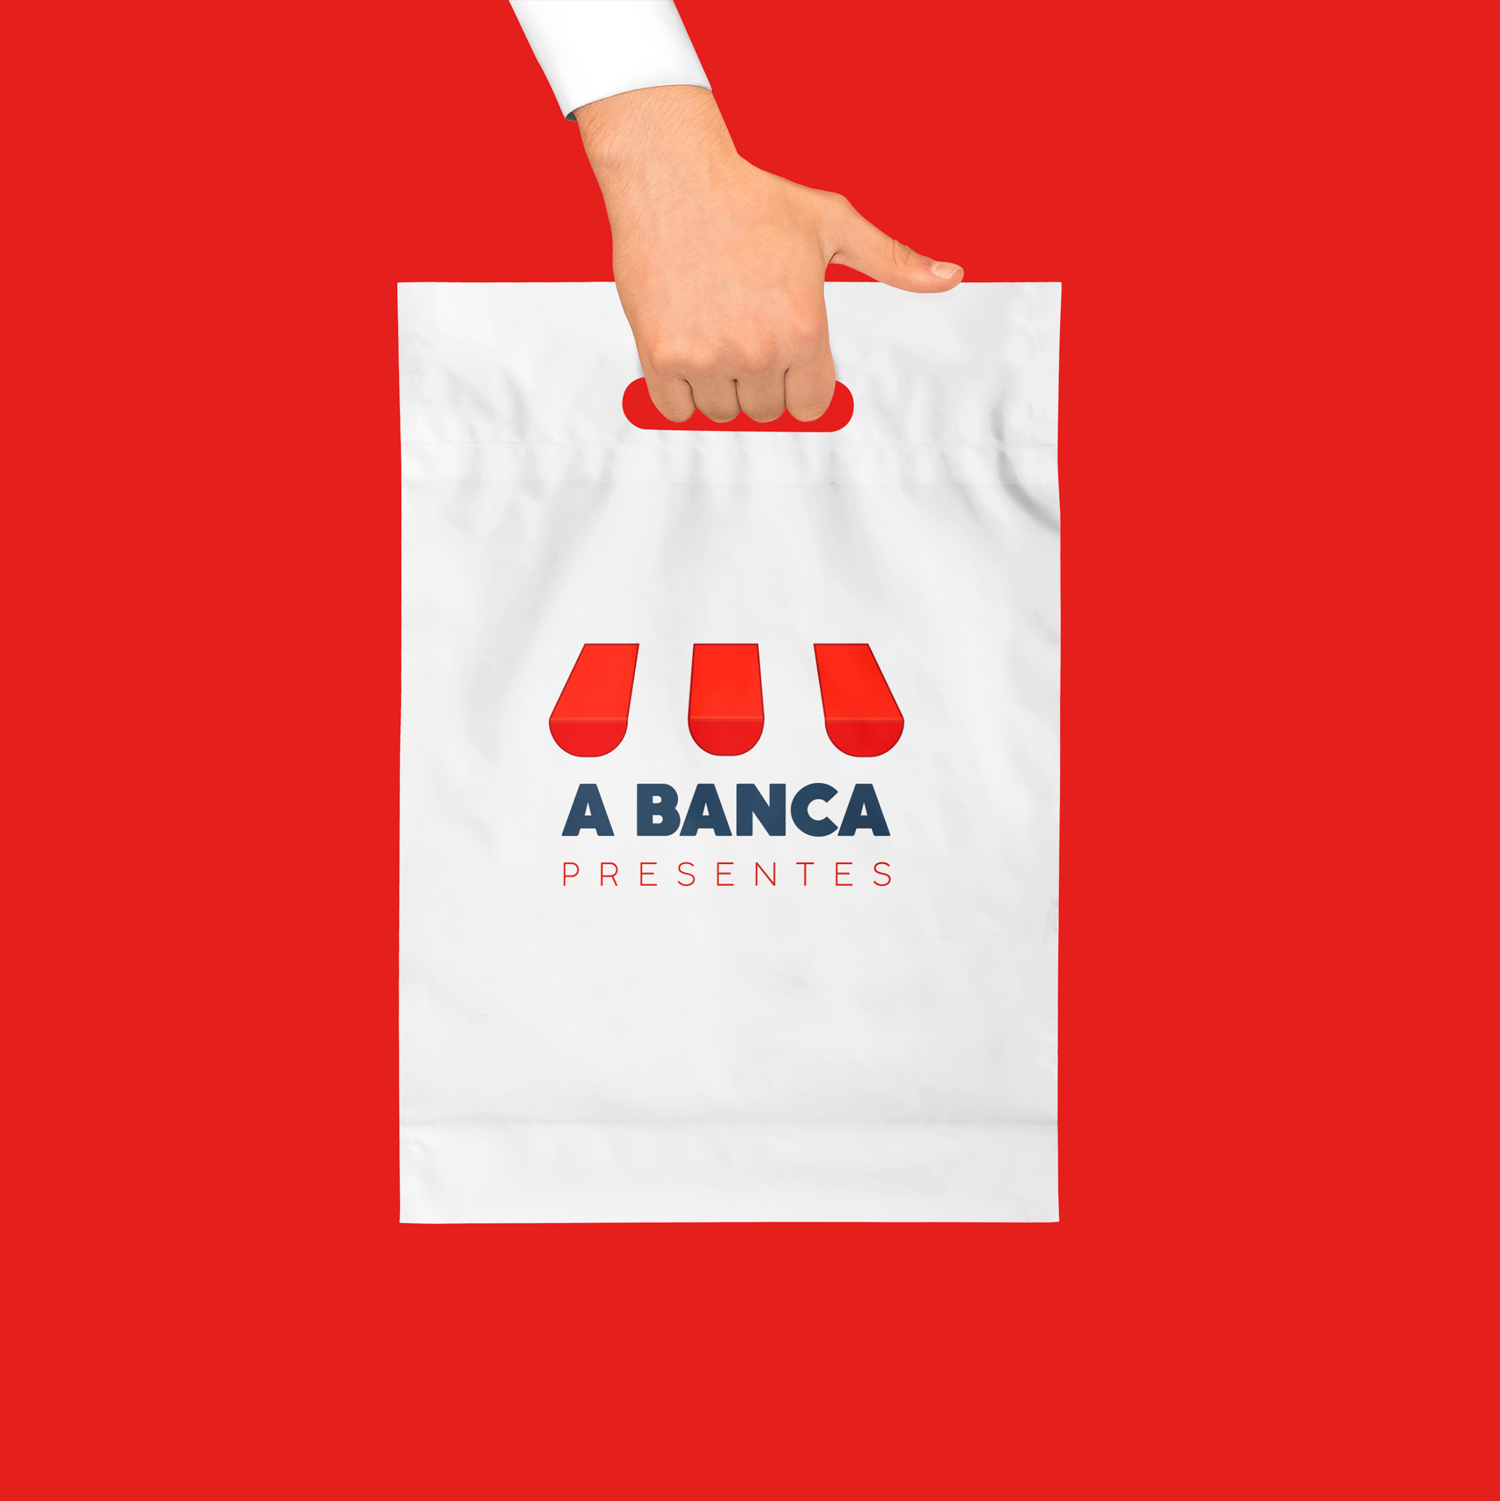 Logo da A BANCA - Combinação de faixas vermelhas e logotipo "A BANCA" em azul marinho